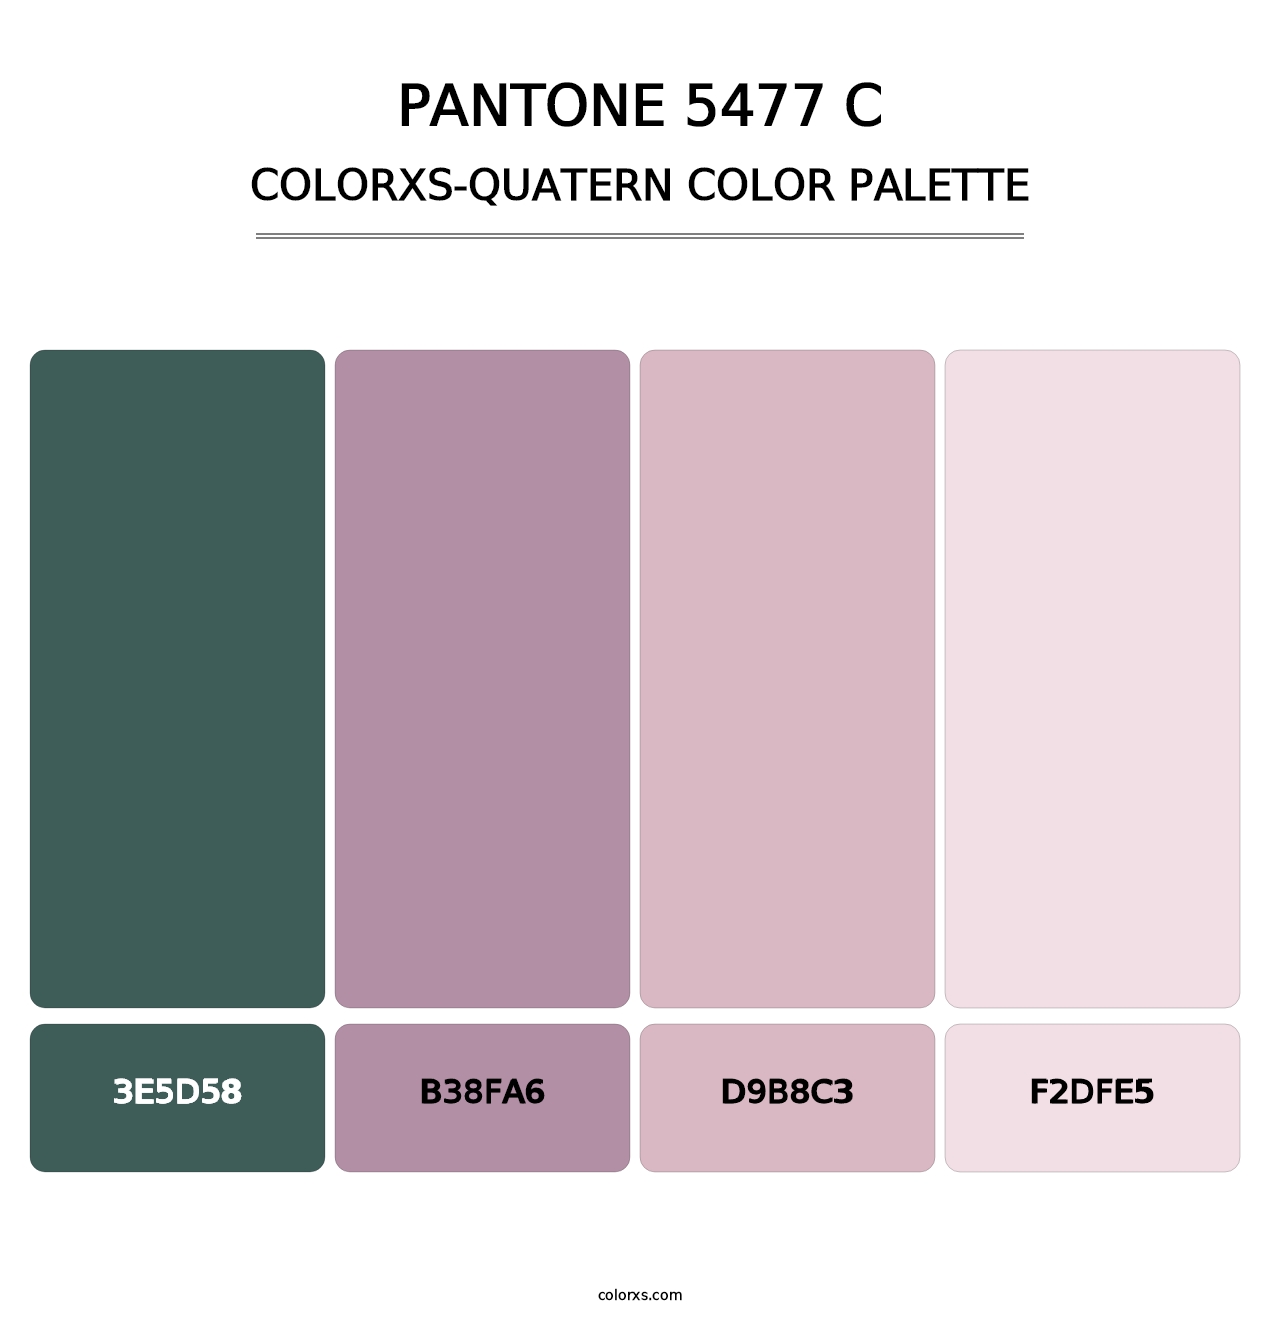 PANTONE 5477 C - Colorxs Quatern Palette